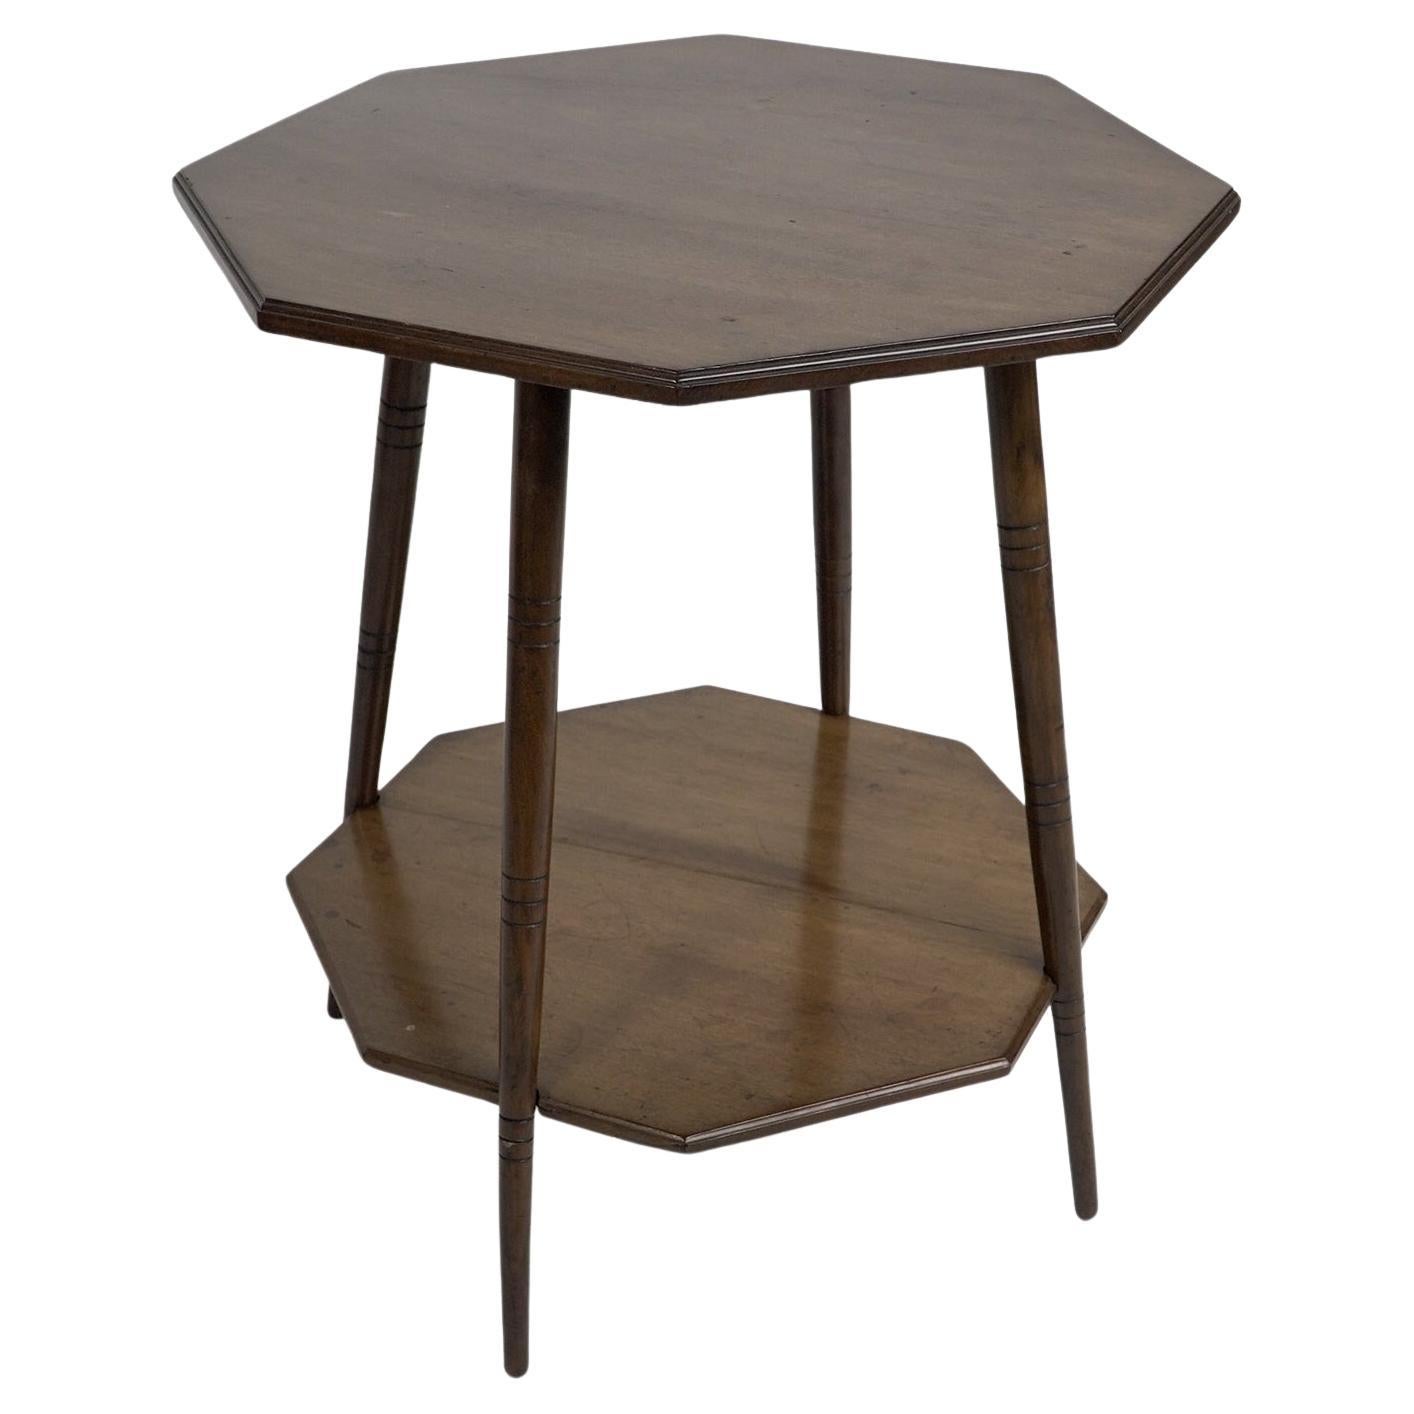 Collinson & Lock. Table octogonale à deux niveaux de l'Aesthetic Movement sur des pieds tournés en anneau.